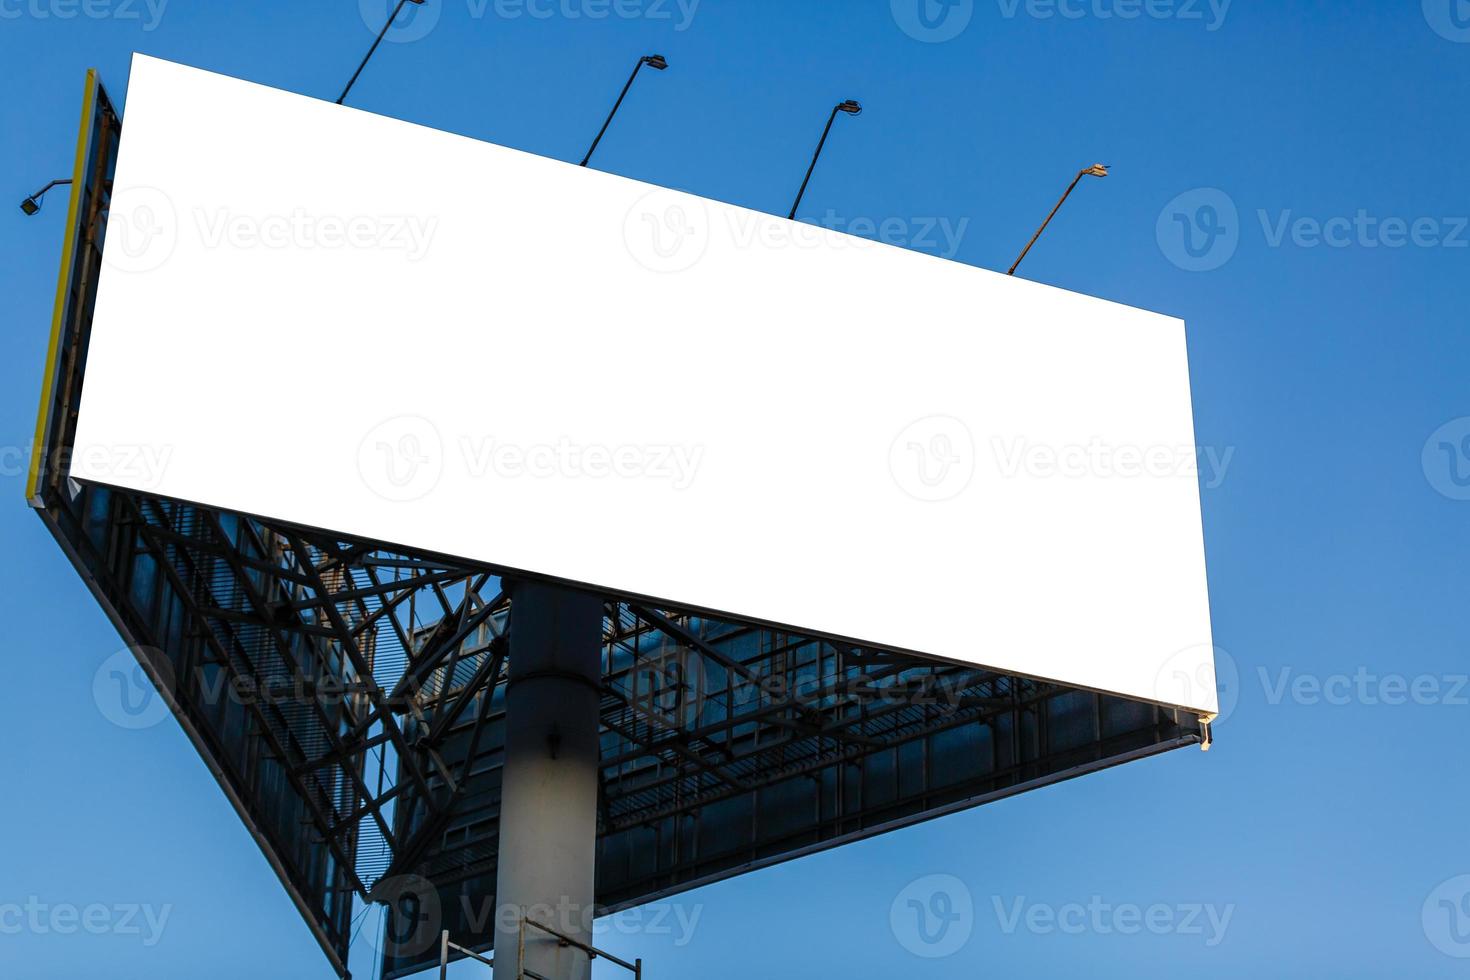 aanplakbord blanco voor buitenshuis reclame poster of blanco aanplakbord Bij nacht tijd voor advertentie. straat licht foto